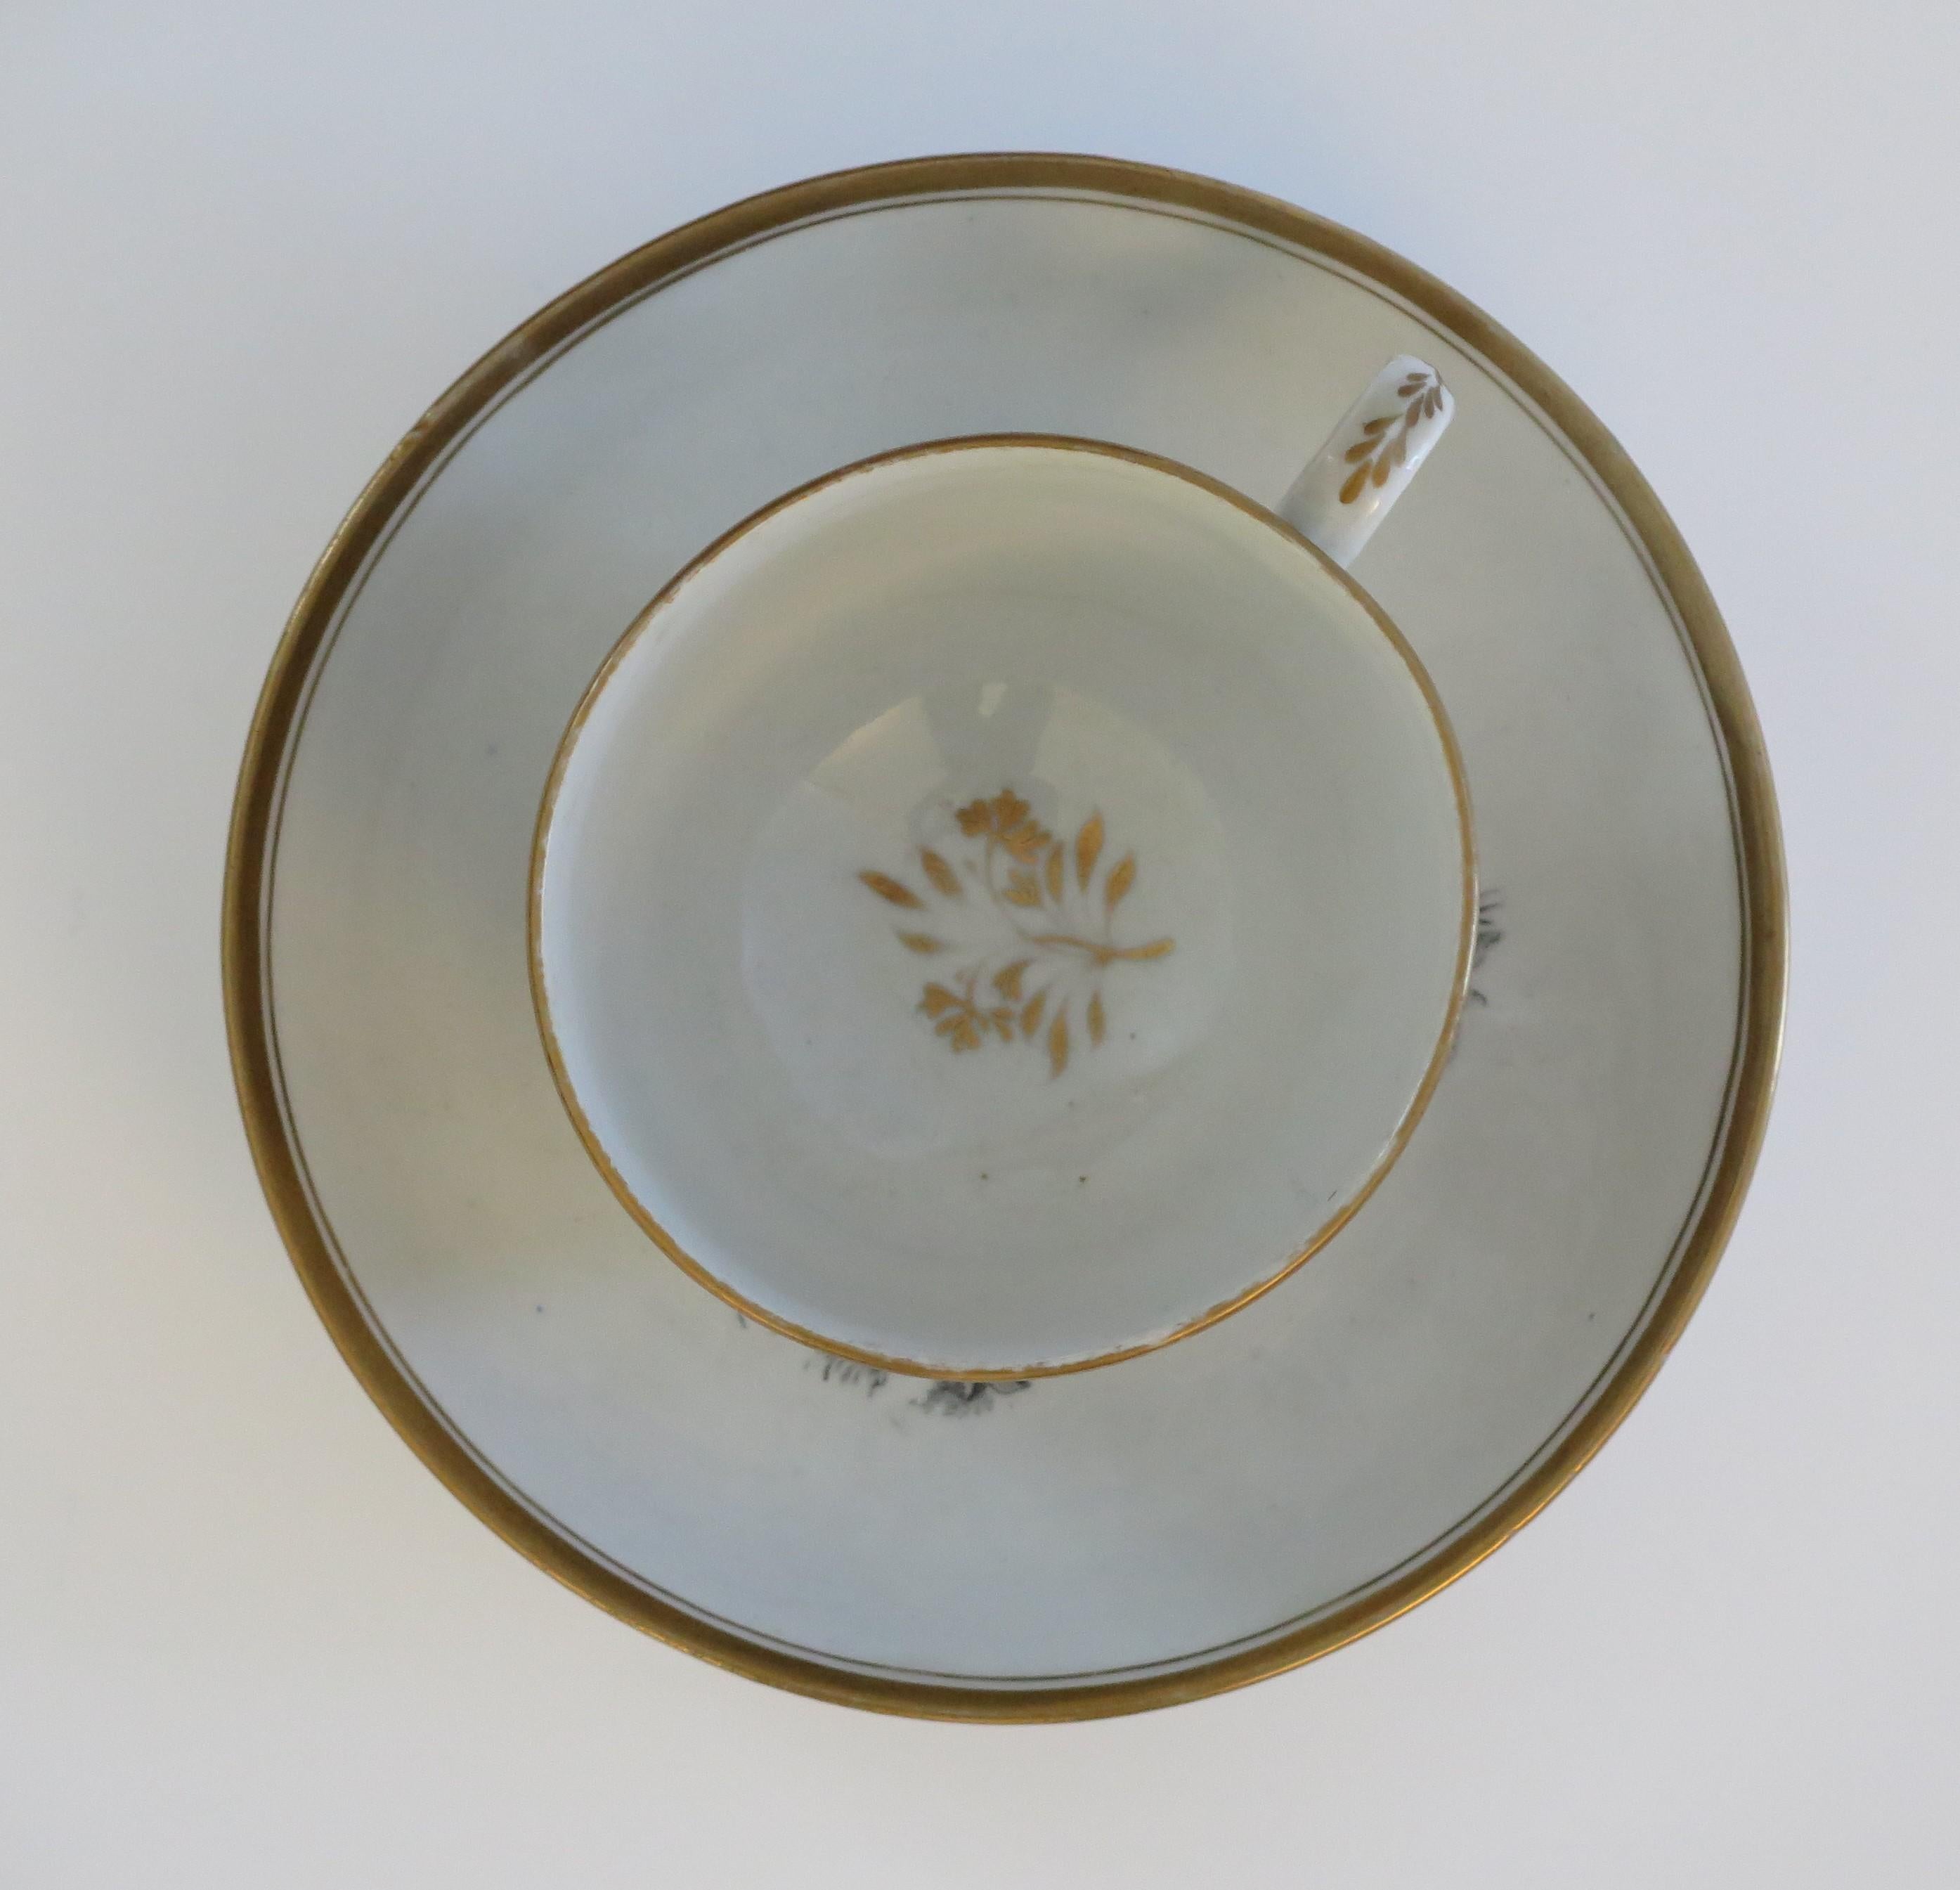 Dies ist eine Fledermaus gedruckt Porzellan Teetasse und Untertasse, von New Hall, aus dem frühen 19. Jahrhundert George 111rd Zeitraum, ca. 1805.

Beide Stücke sind gut getöpfert, die Tasse auf einem niedrigen Fuß mit einem Ringhenkel.

Beide